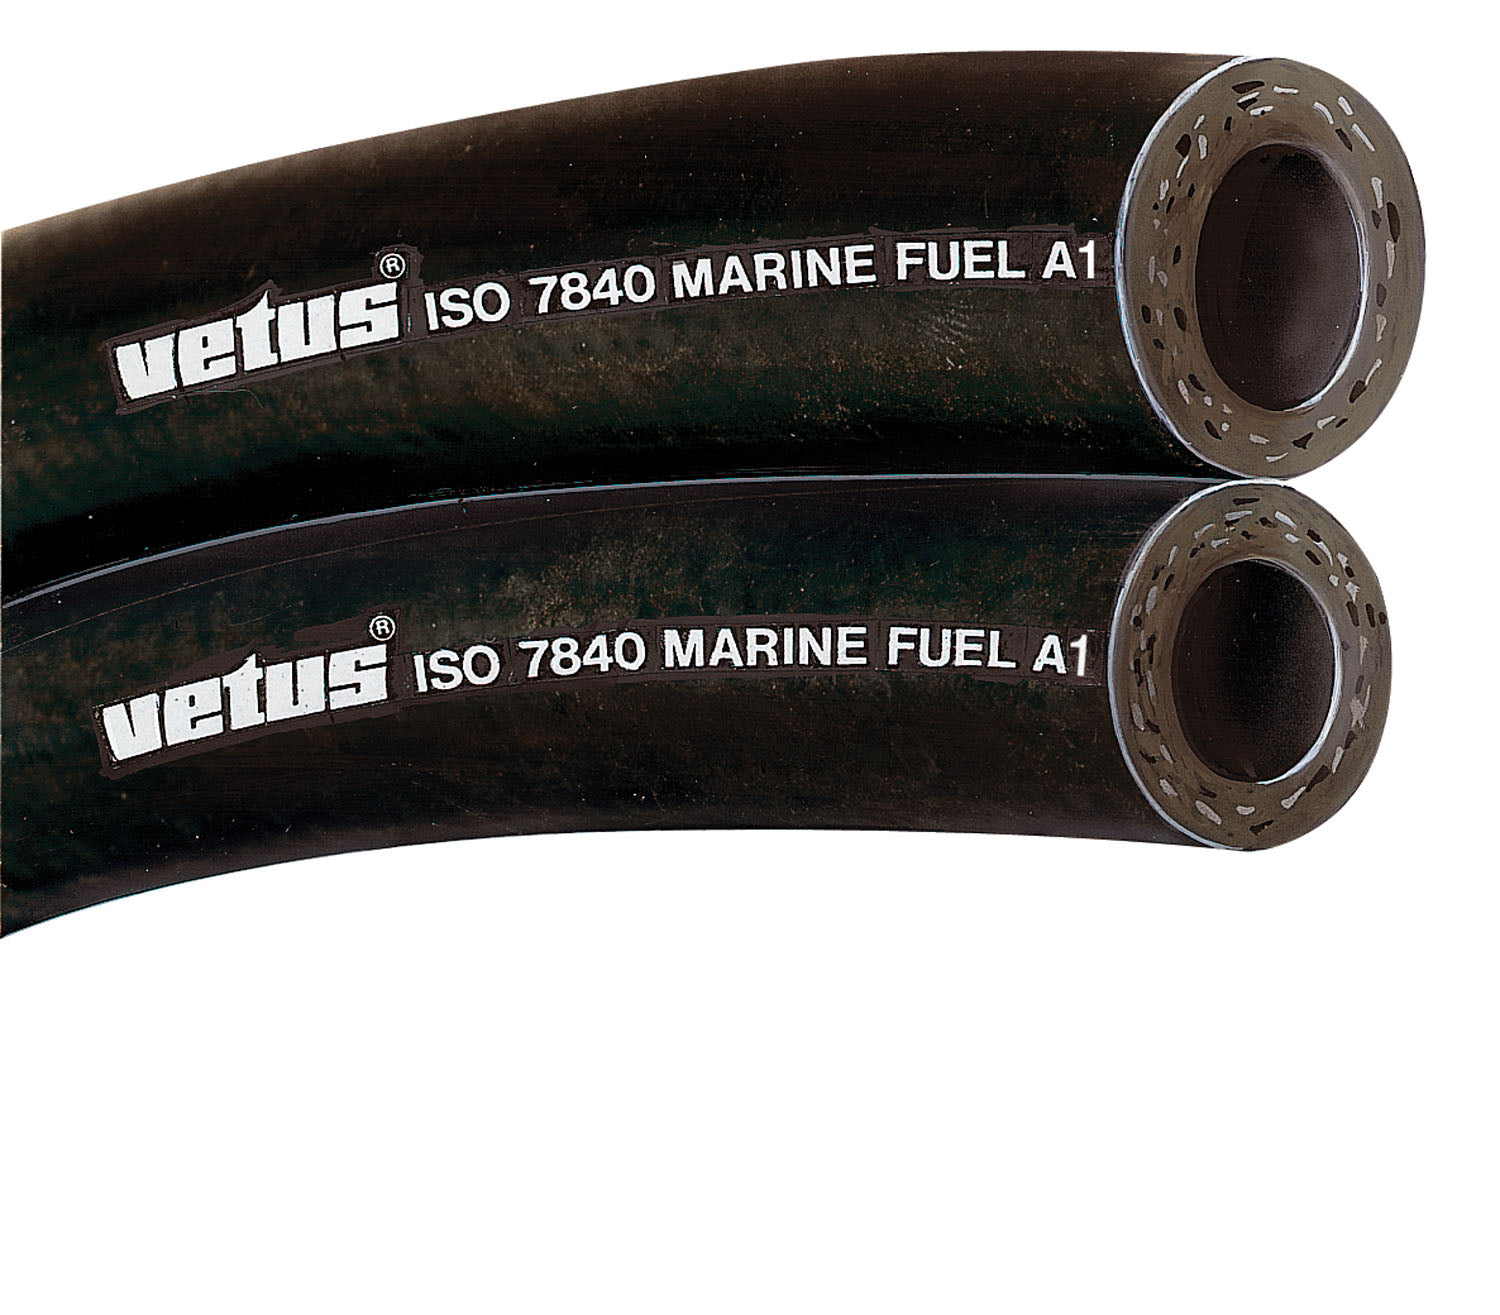 Vetus FUHOSE25A - Fuel hose 25x35mm iso7840-marine fuel A1